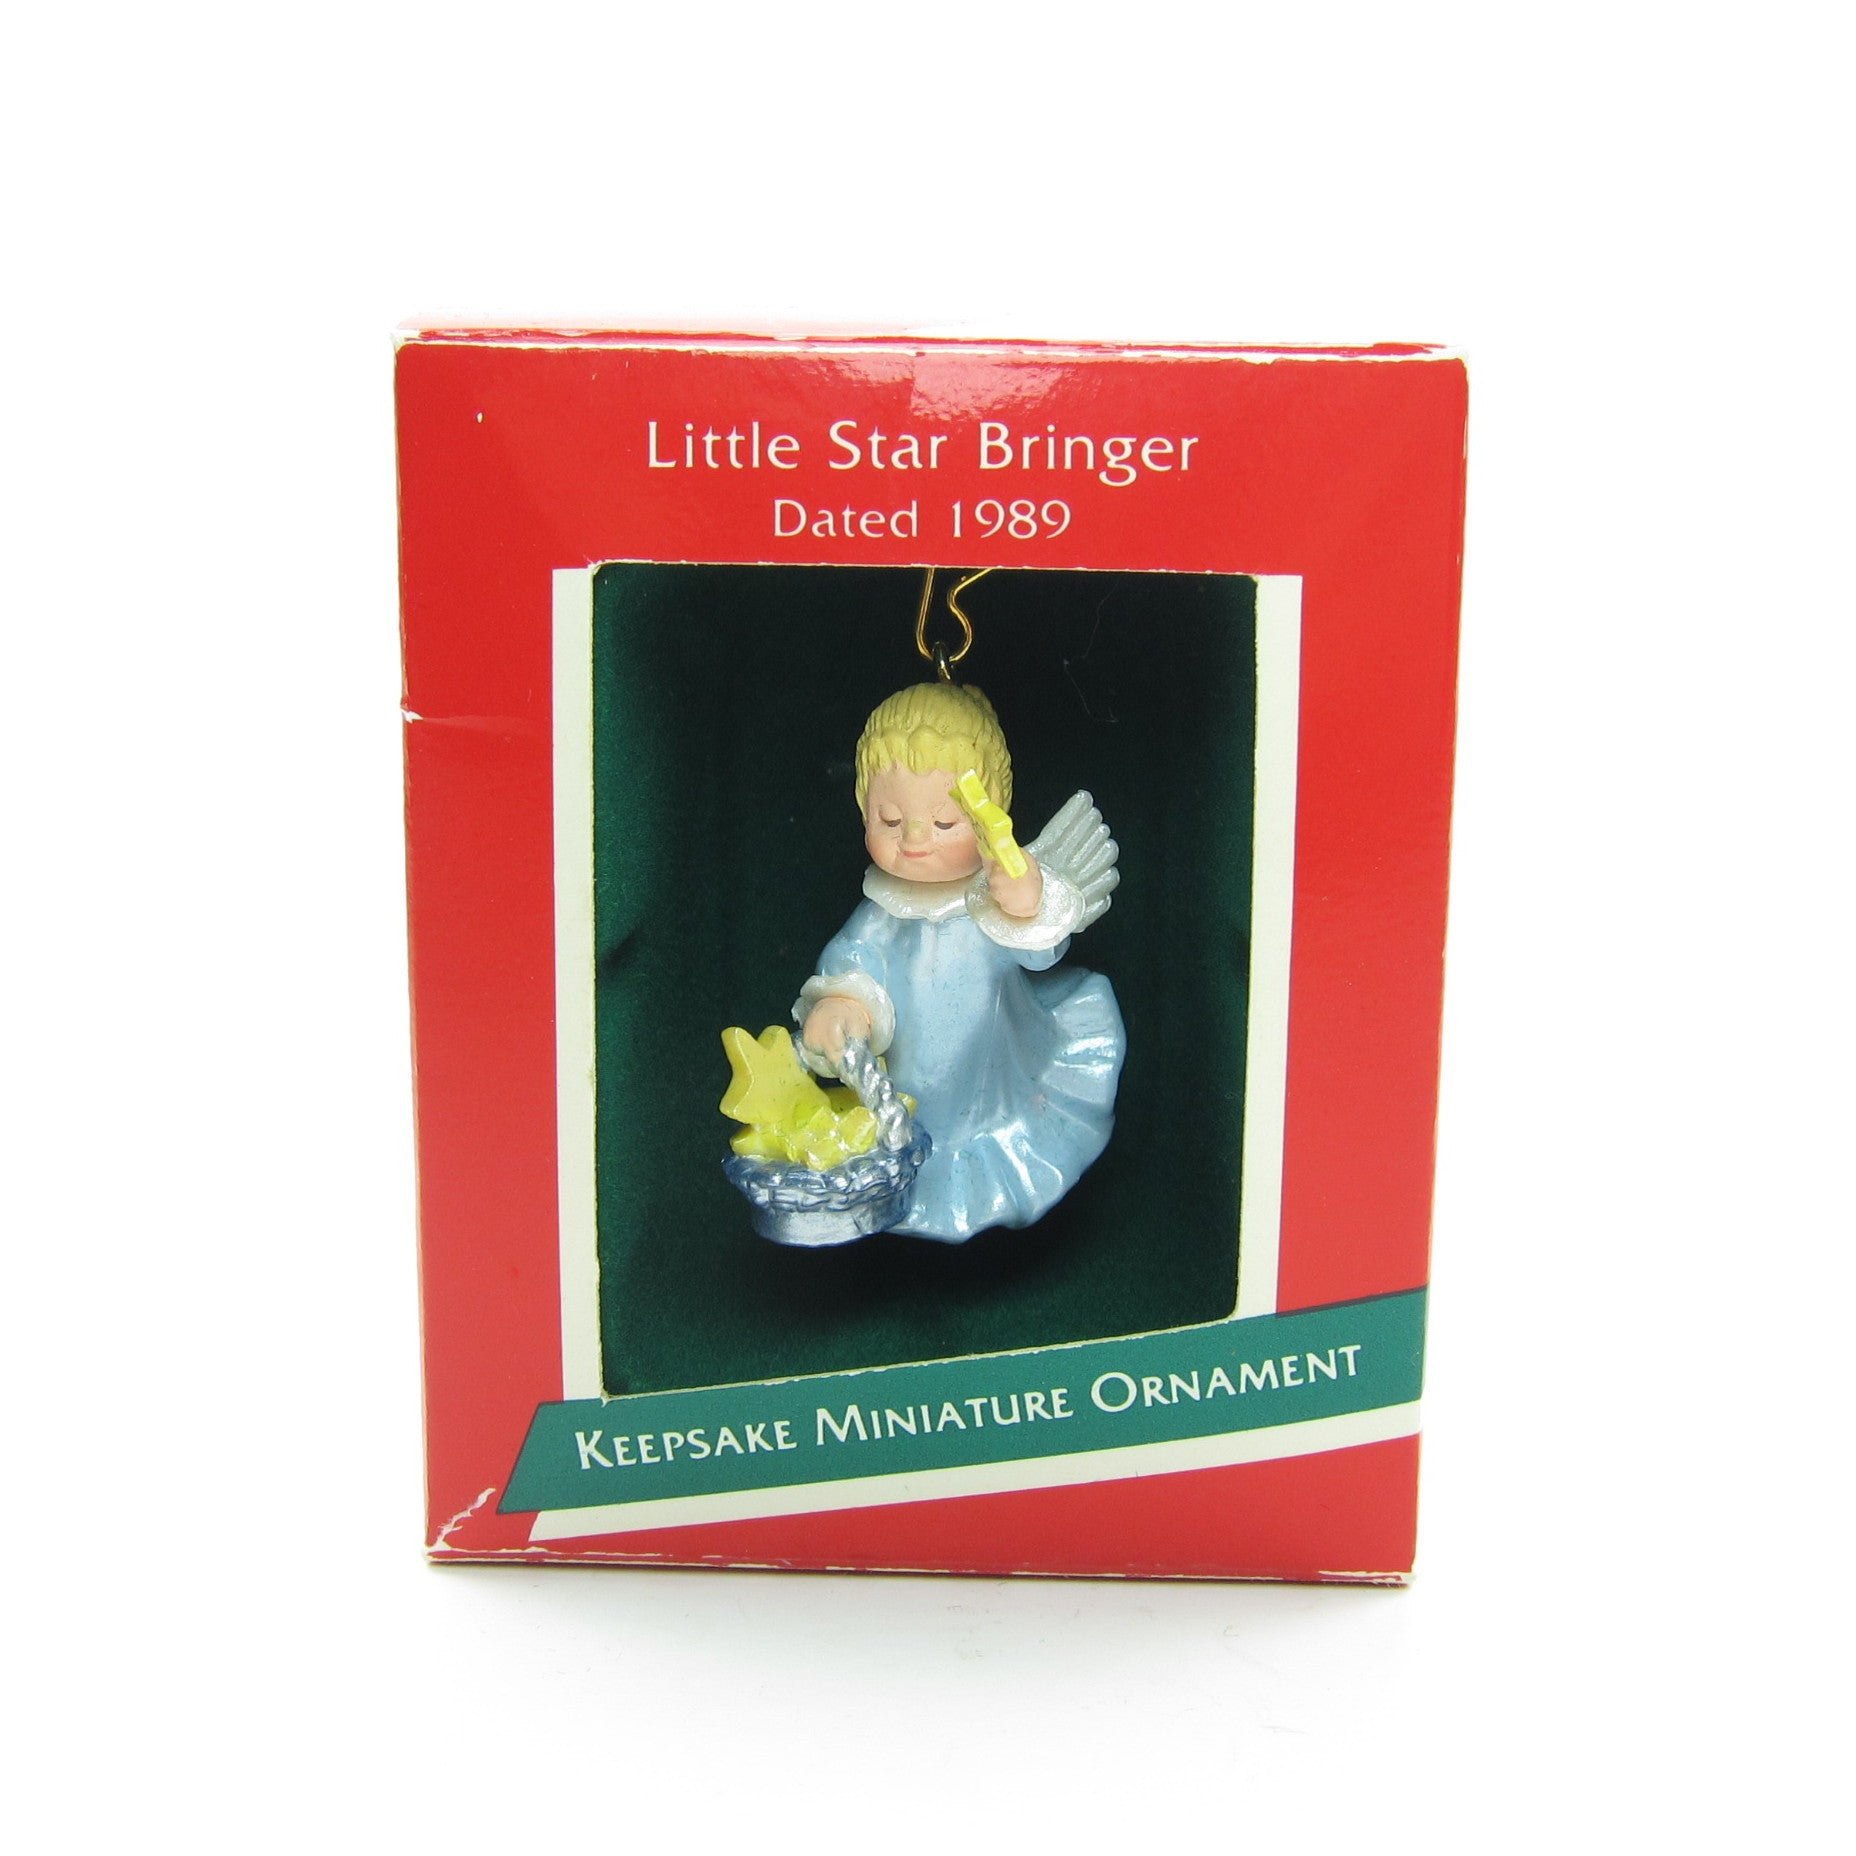 Hallmark Little Star Bringer 1989 Christmas ornament